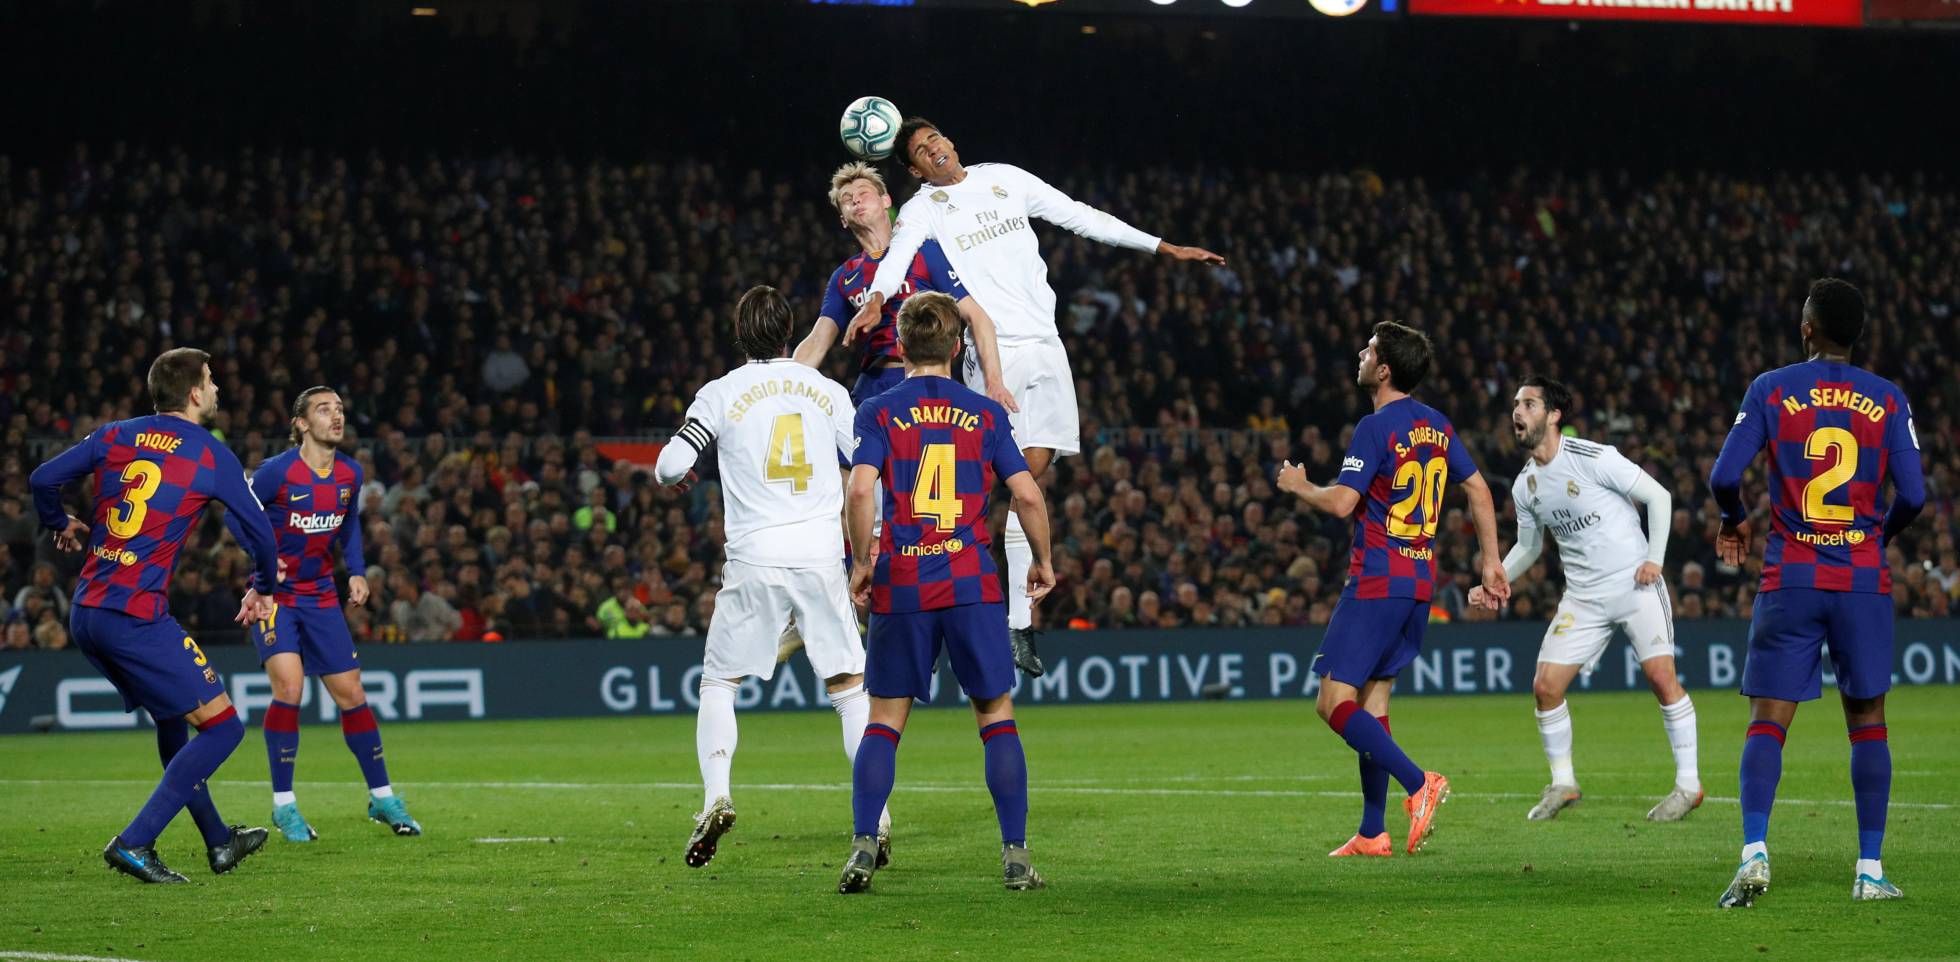 Fotos: Barcelona - Real Madrid, clásico de La Liga en imágenes | Deportes | EL PAÍS